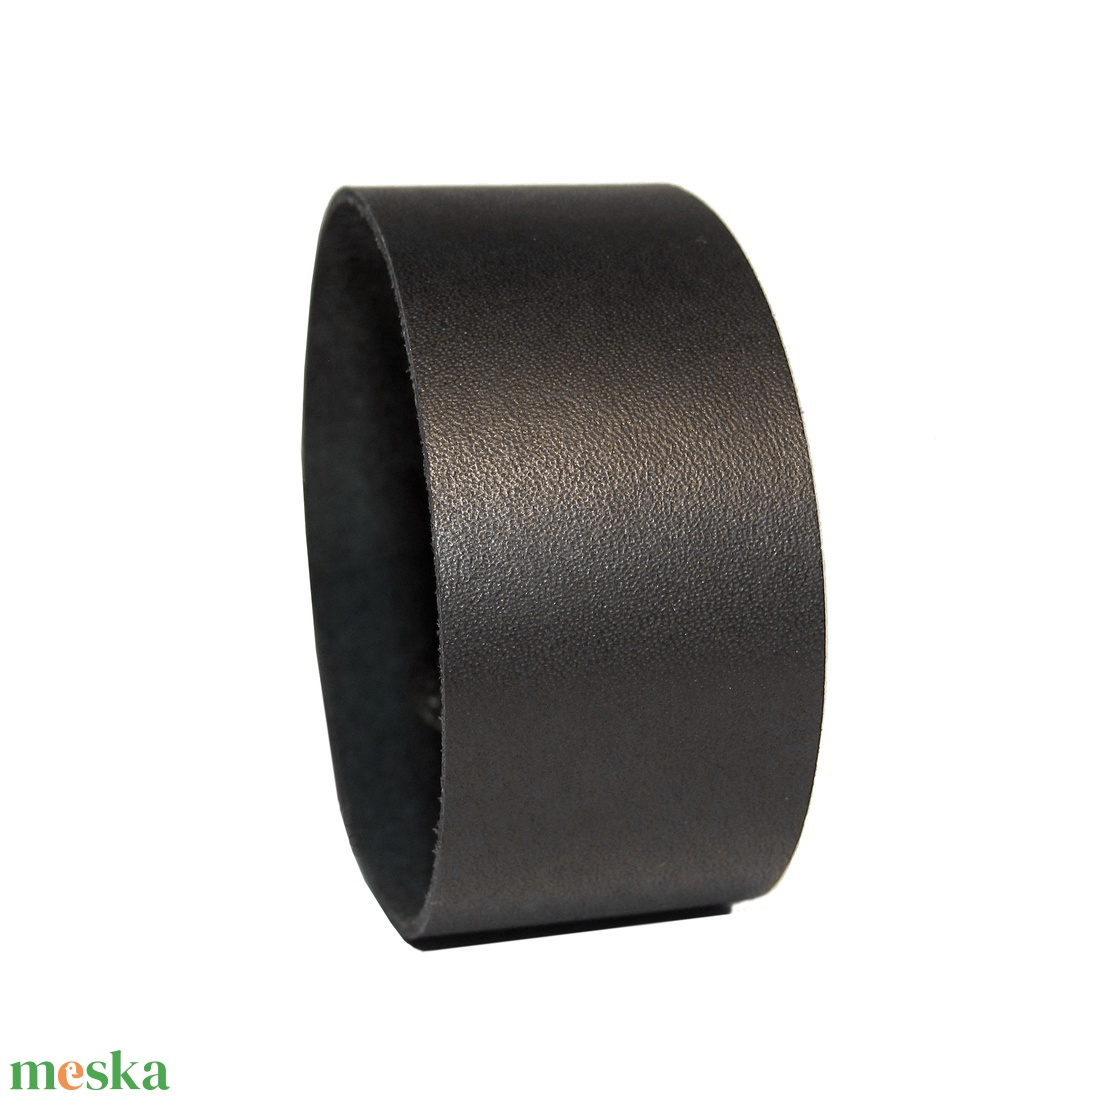 Minimal Black - Fekete bőr karkötő - 2,5 cm széles - ékszer - karkötő - széles karkötő - Meska.hu